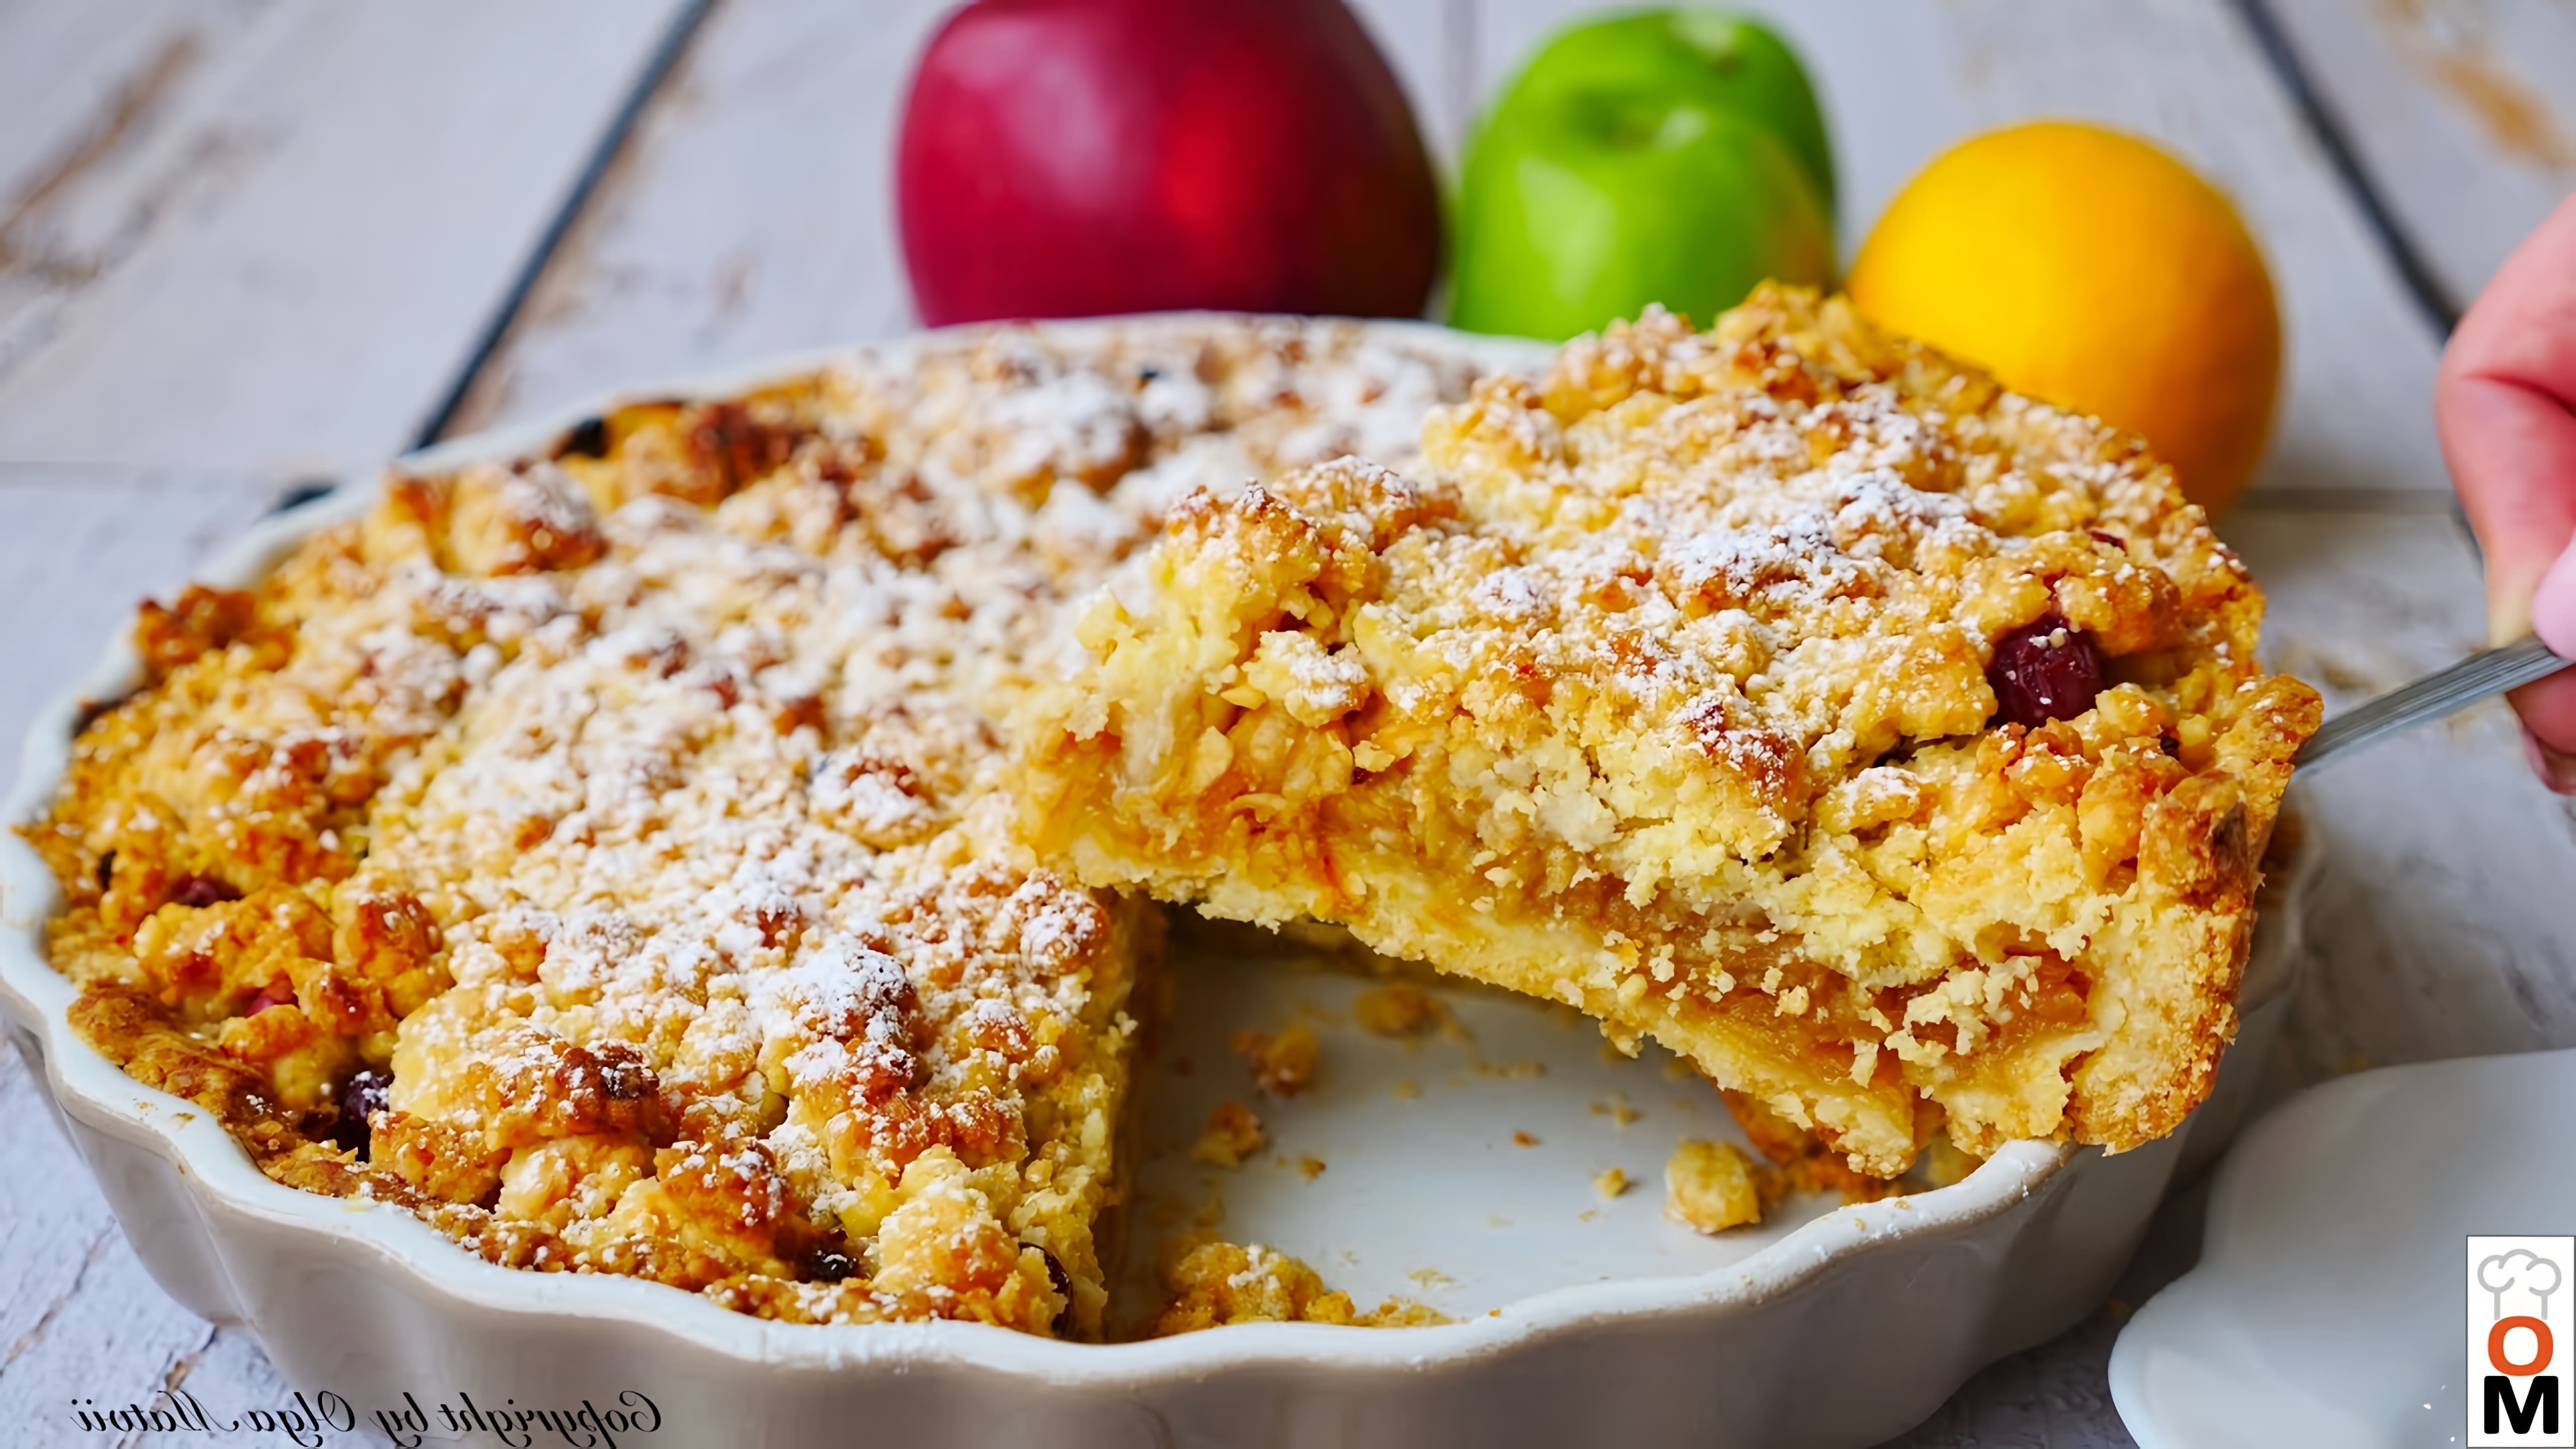 В этом видео демонстрируется рецепт песочного яблочного пирога с клюквой